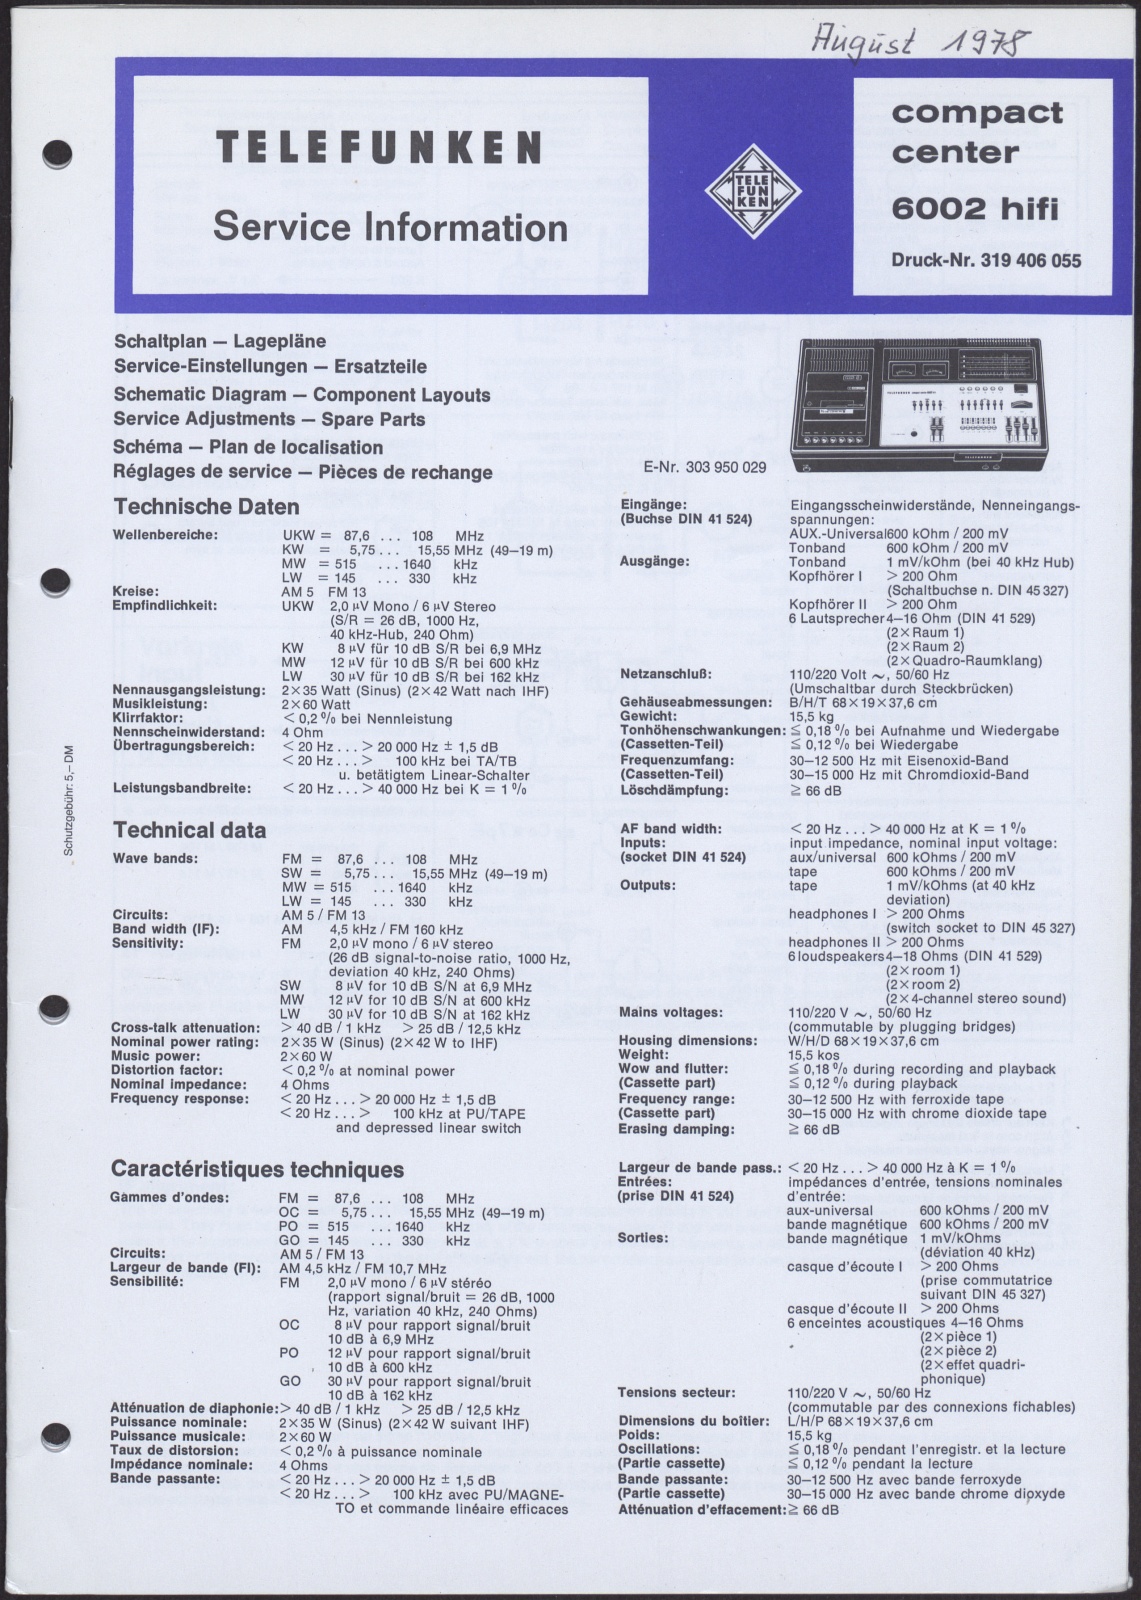 Bedienungsanleitung: Telefunken Service Information compact center 6002 hifi (Stiftung Deutsches Technikmuseum Berlin CC0)